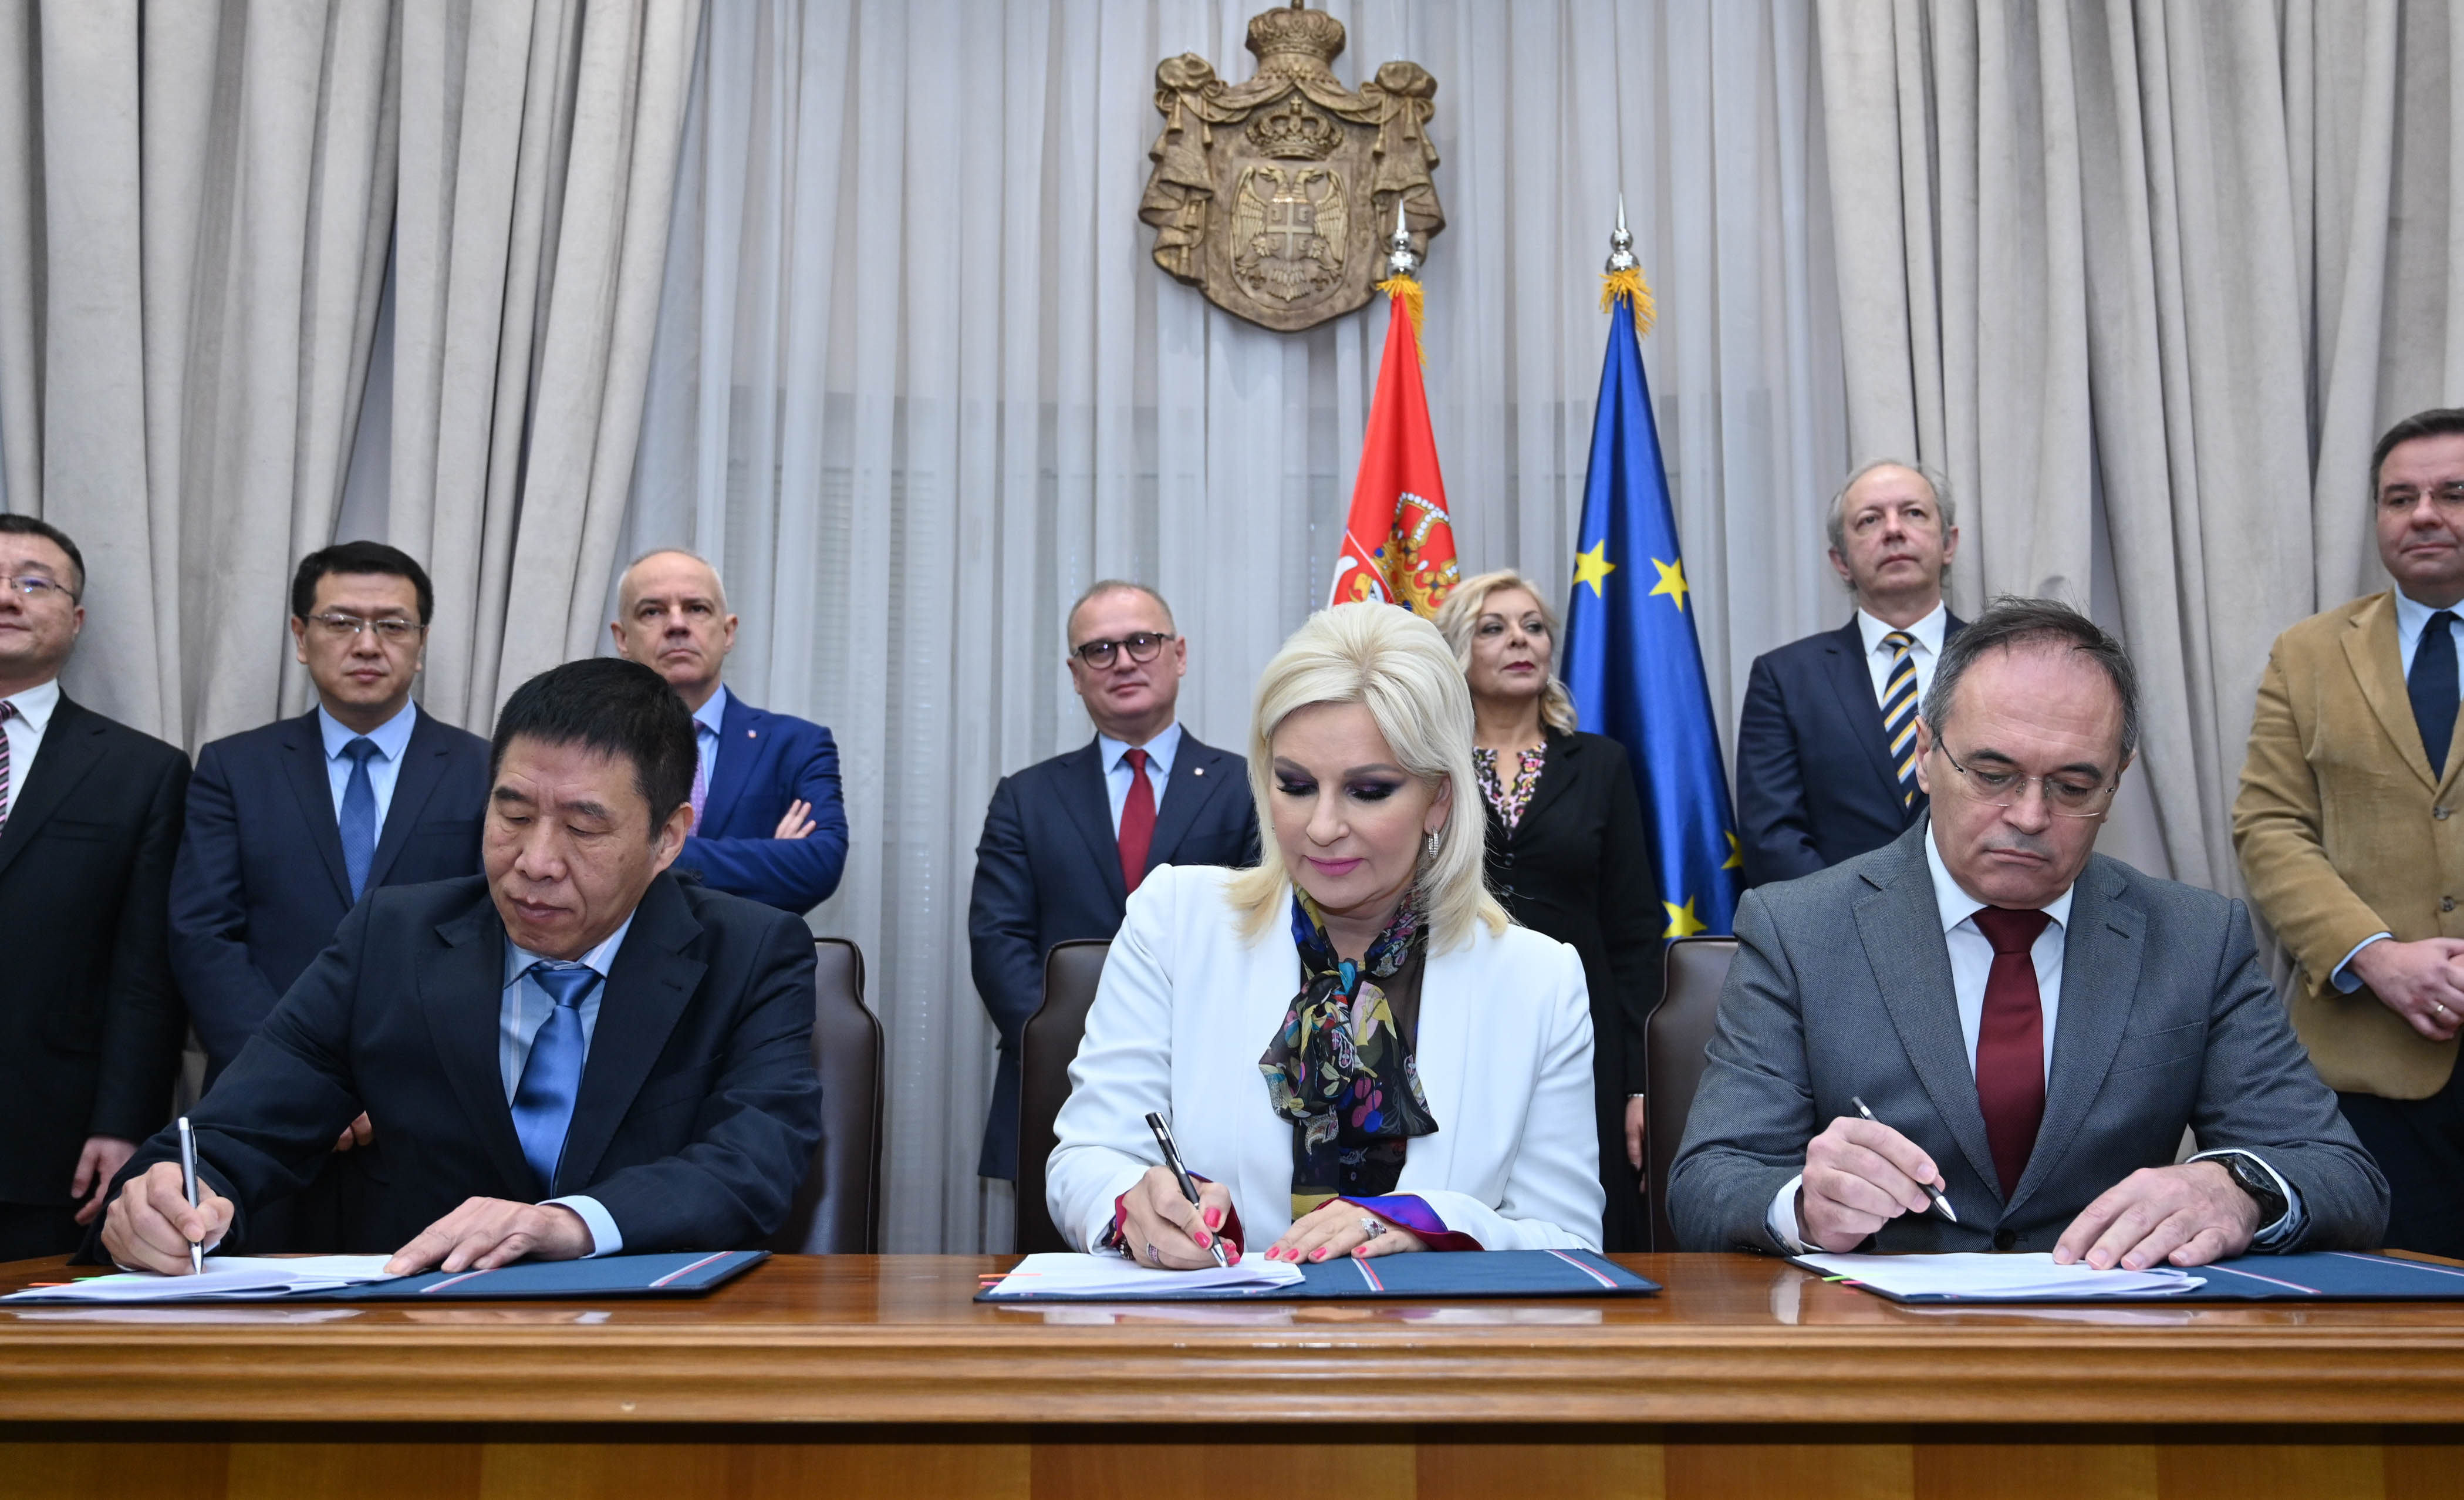 Потписани споразуми за пројекат пречишћавања отпадних вода у Београду